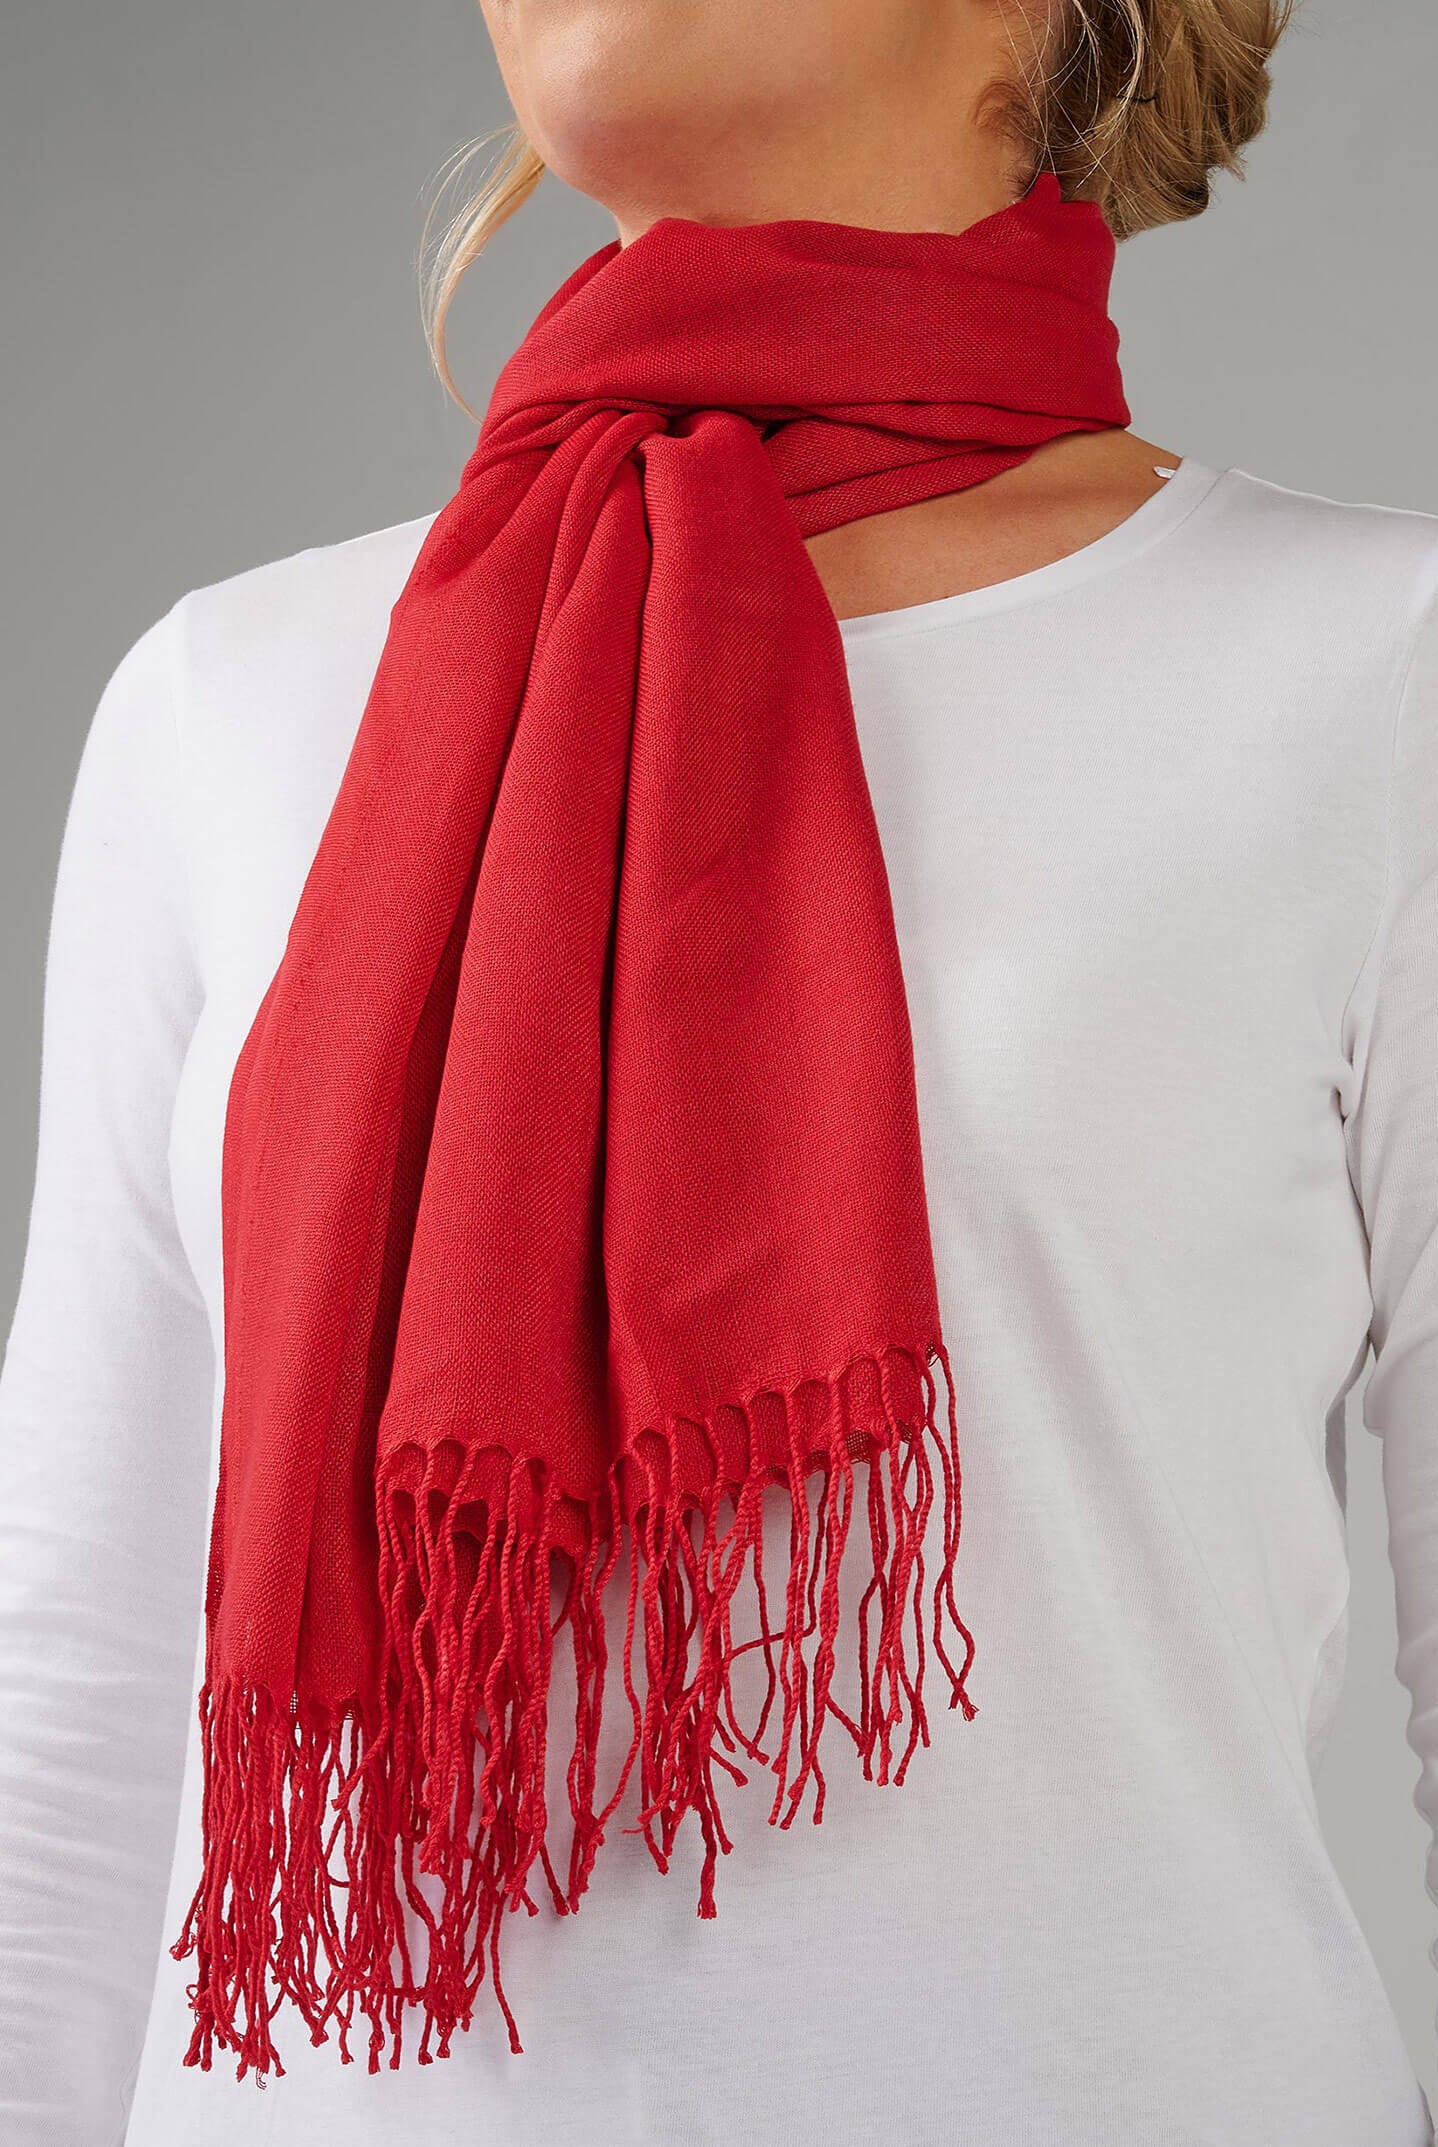 ladies red scarf uk